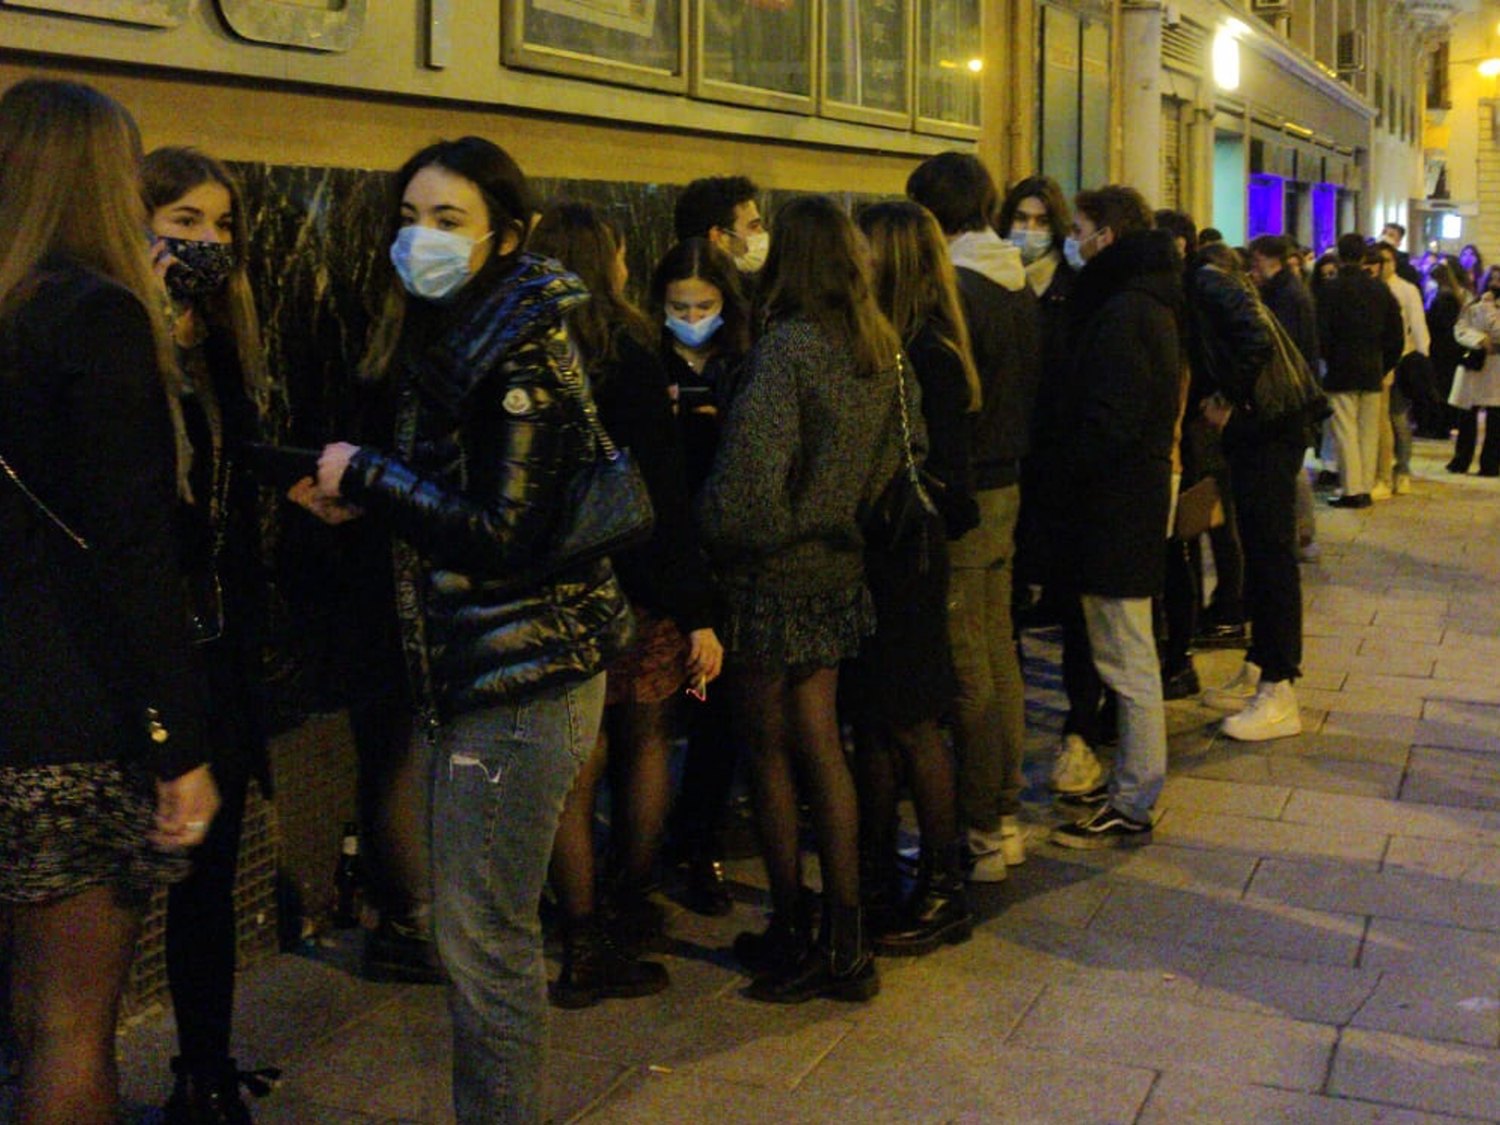 Largas colas en el Teatro Barceló tras la polémica fiesta sin medidas de seguridad